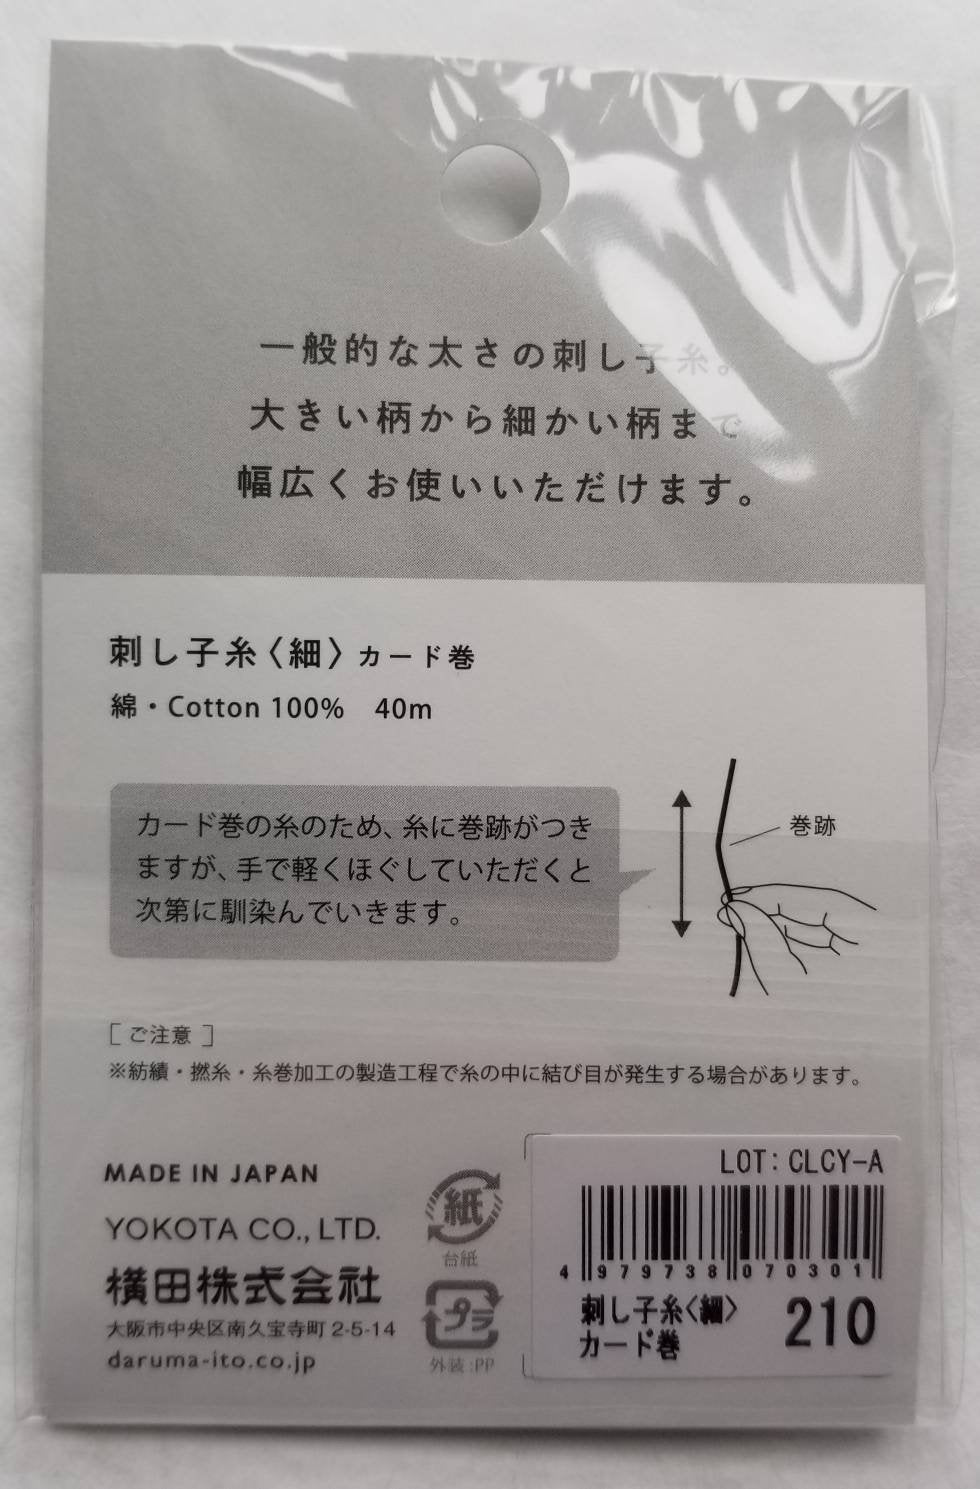 Daruma #210 WISTERIA Japanese Cotton SASHIKO thread 40 meter skein 20/4